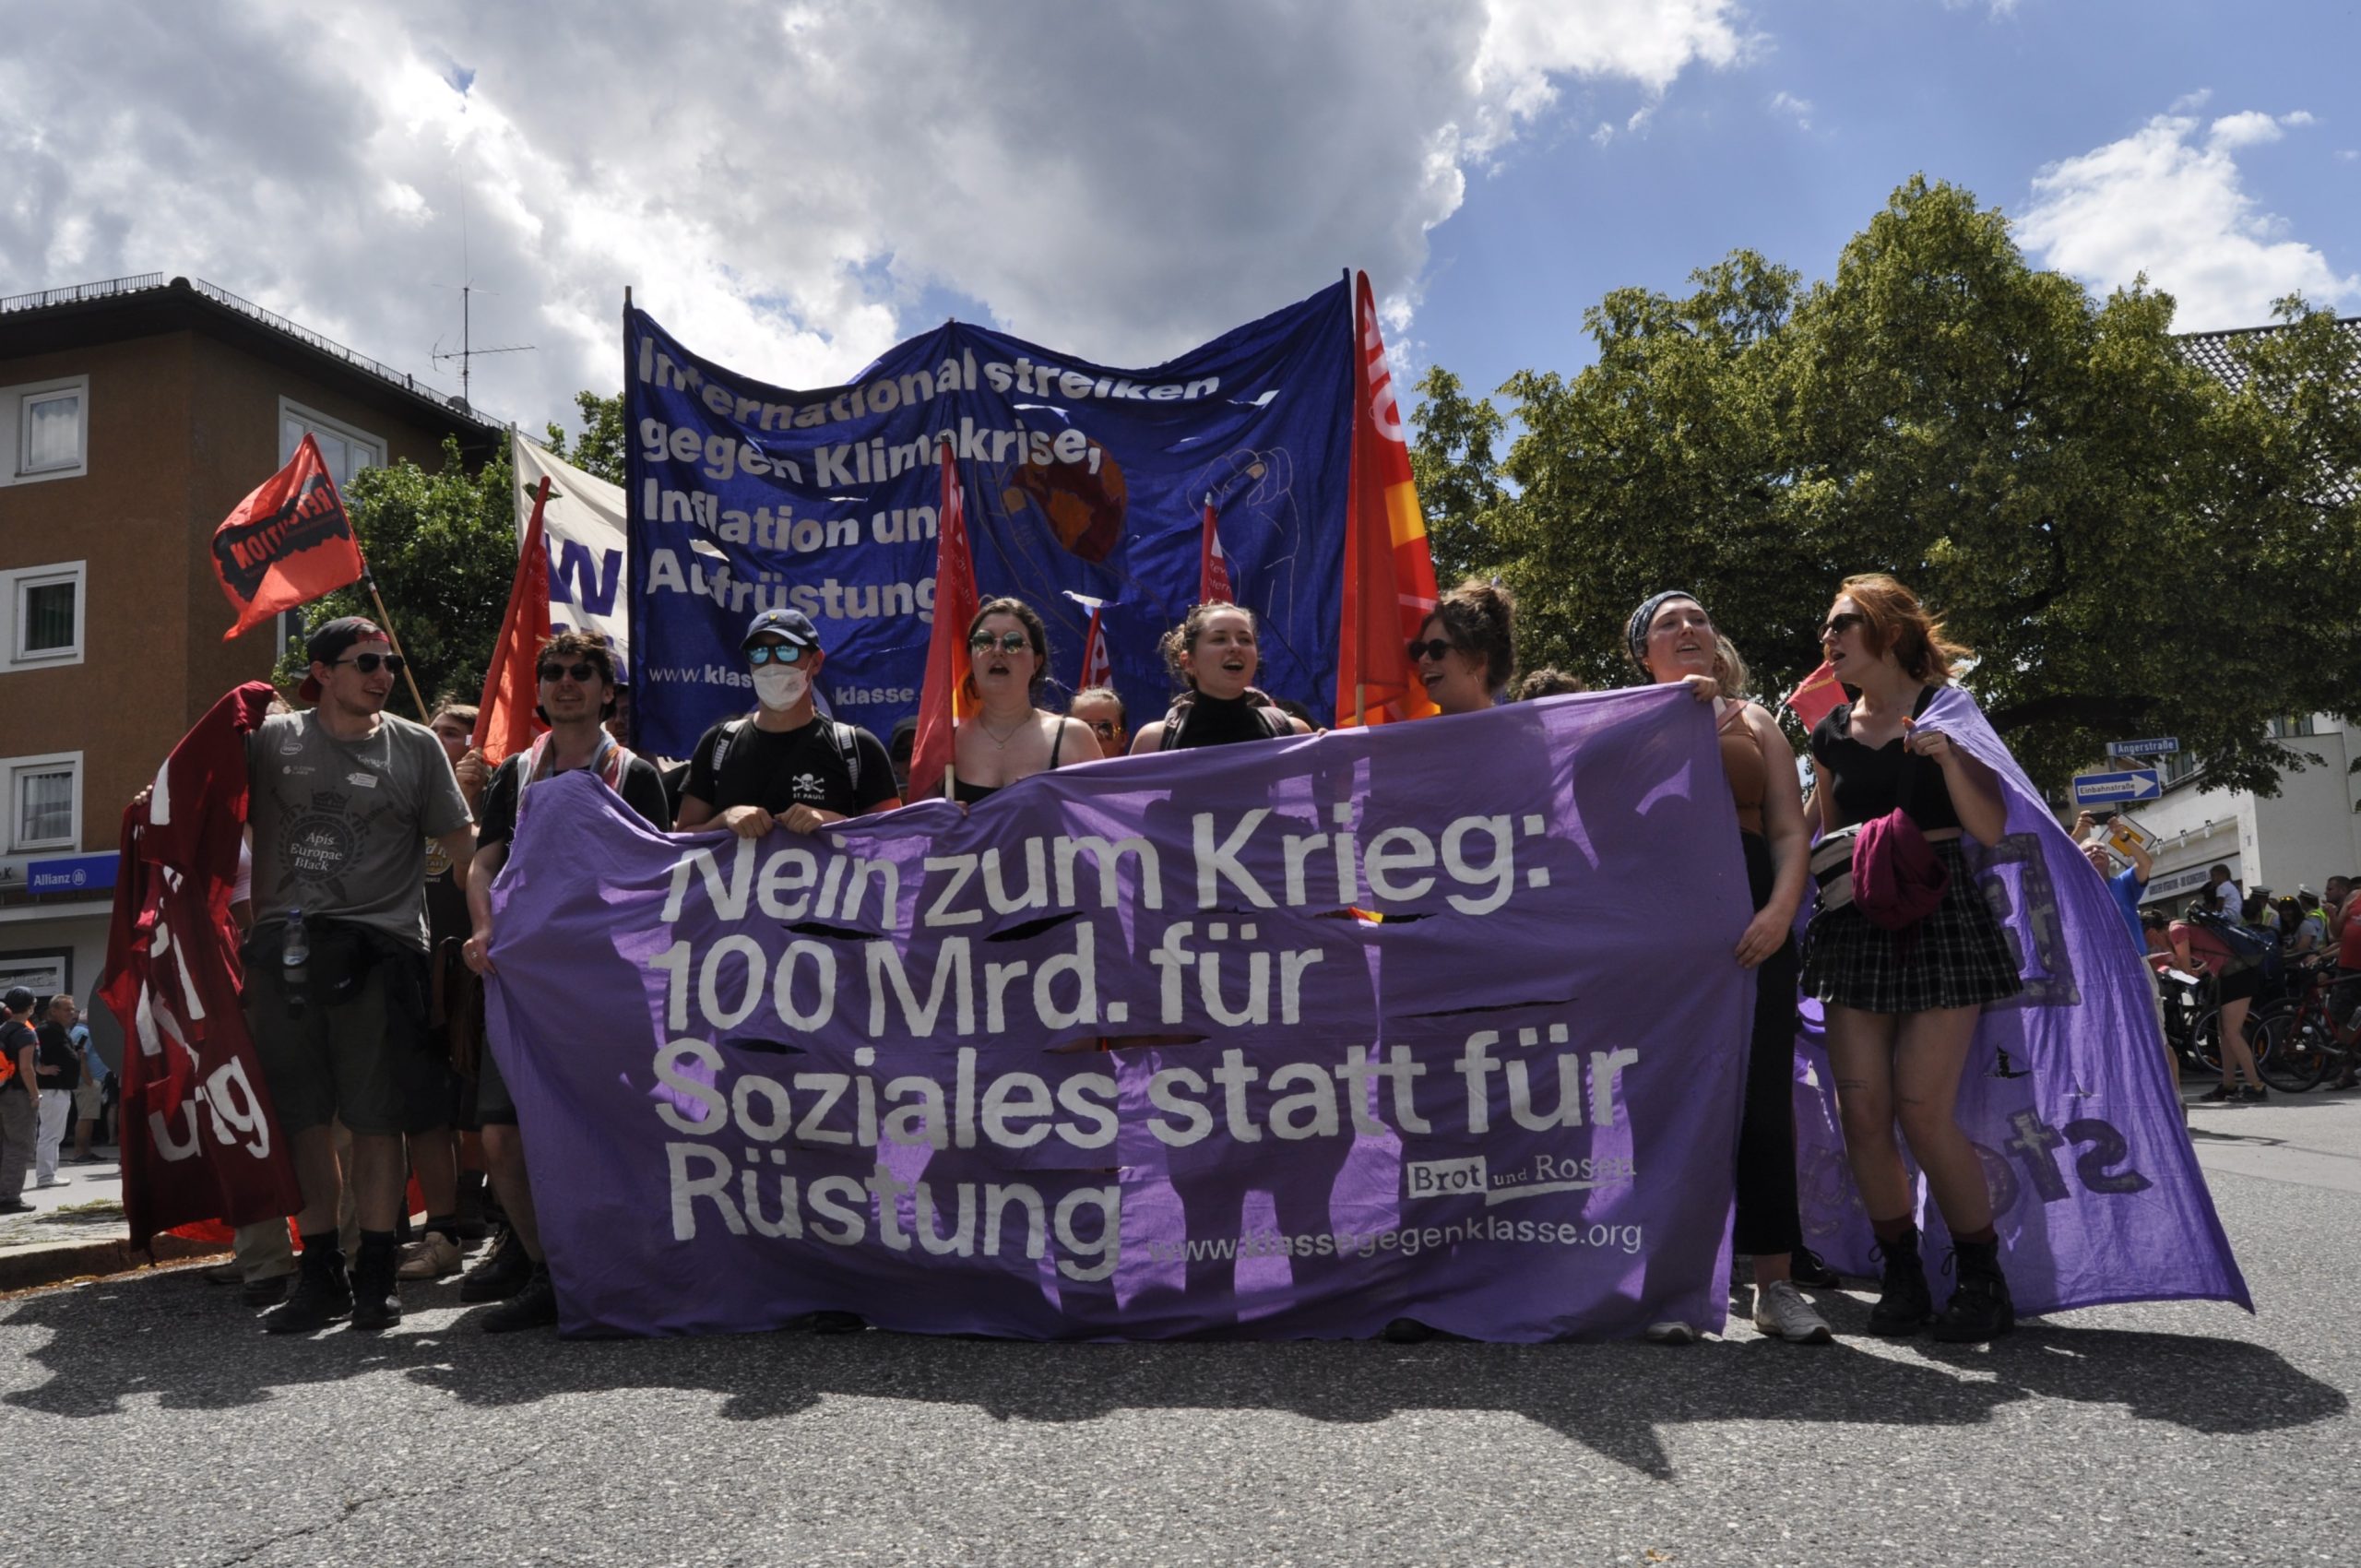 Genug ist genug - Protestieren, statt frieren! Kundgebung am 5.9. in Berlin